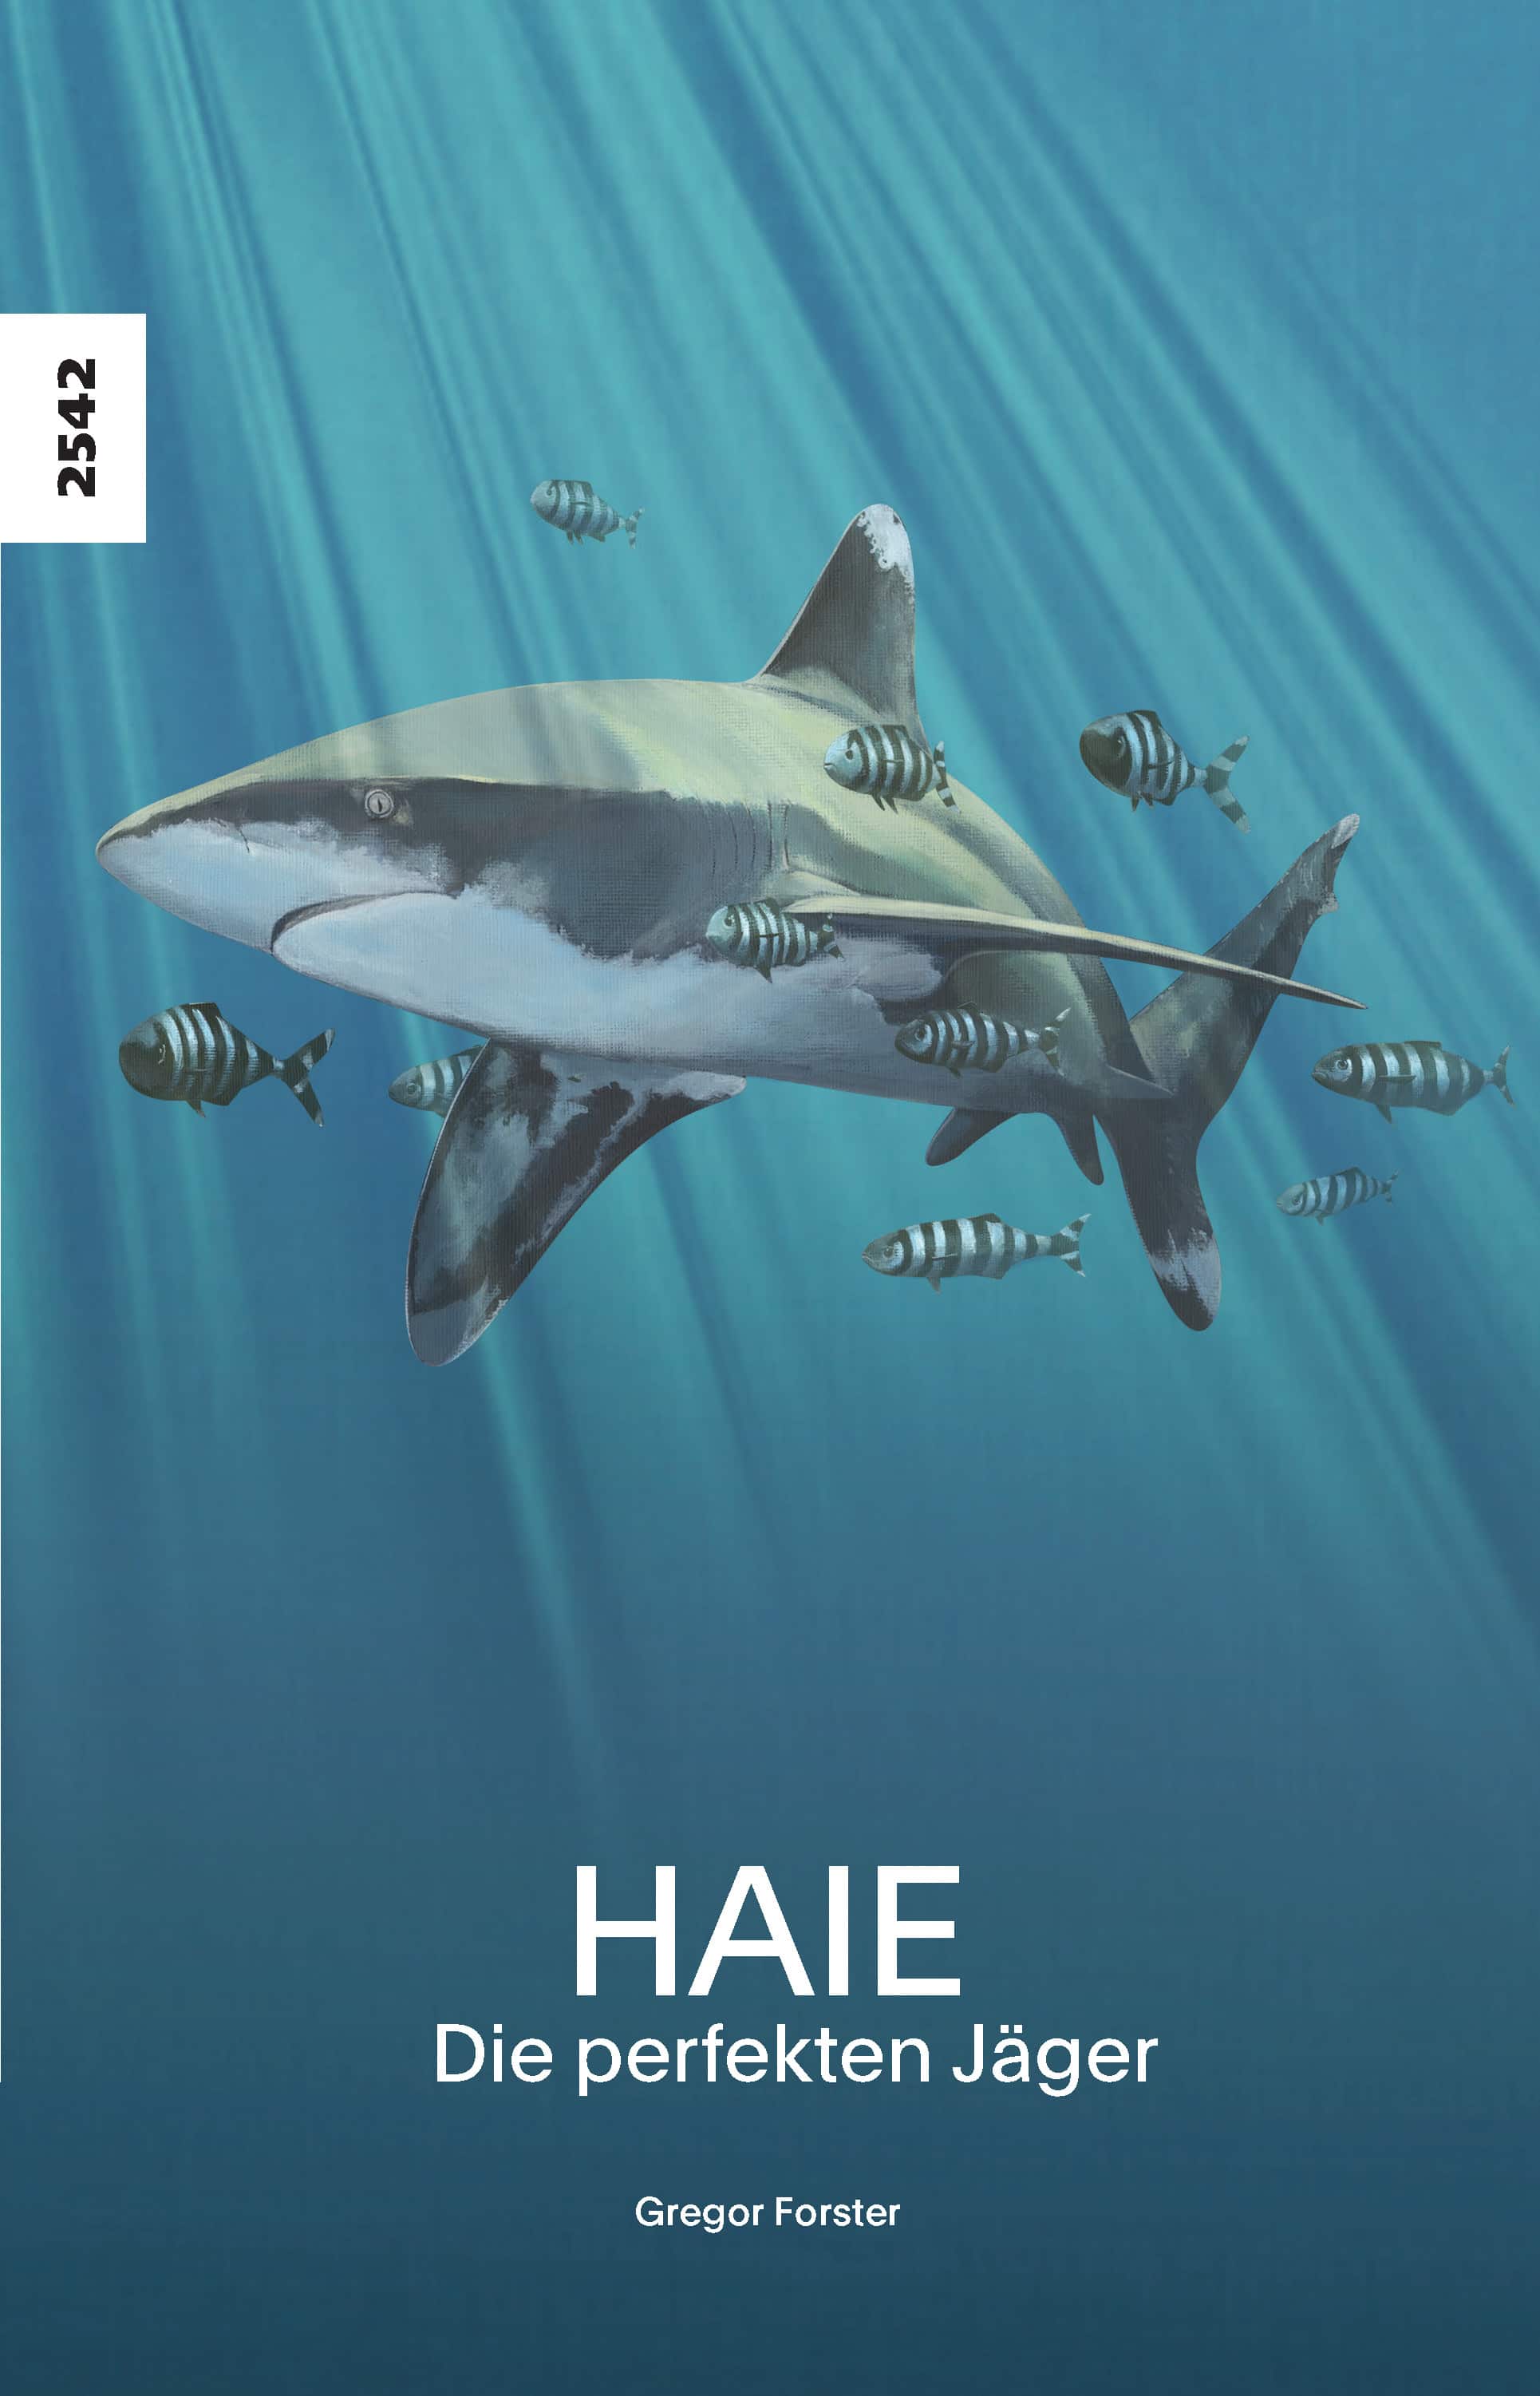 Haie - die perfekten Jaeger, ein Sachbuch von Gregor Forster, SJW Verlag, Natur, Tiere